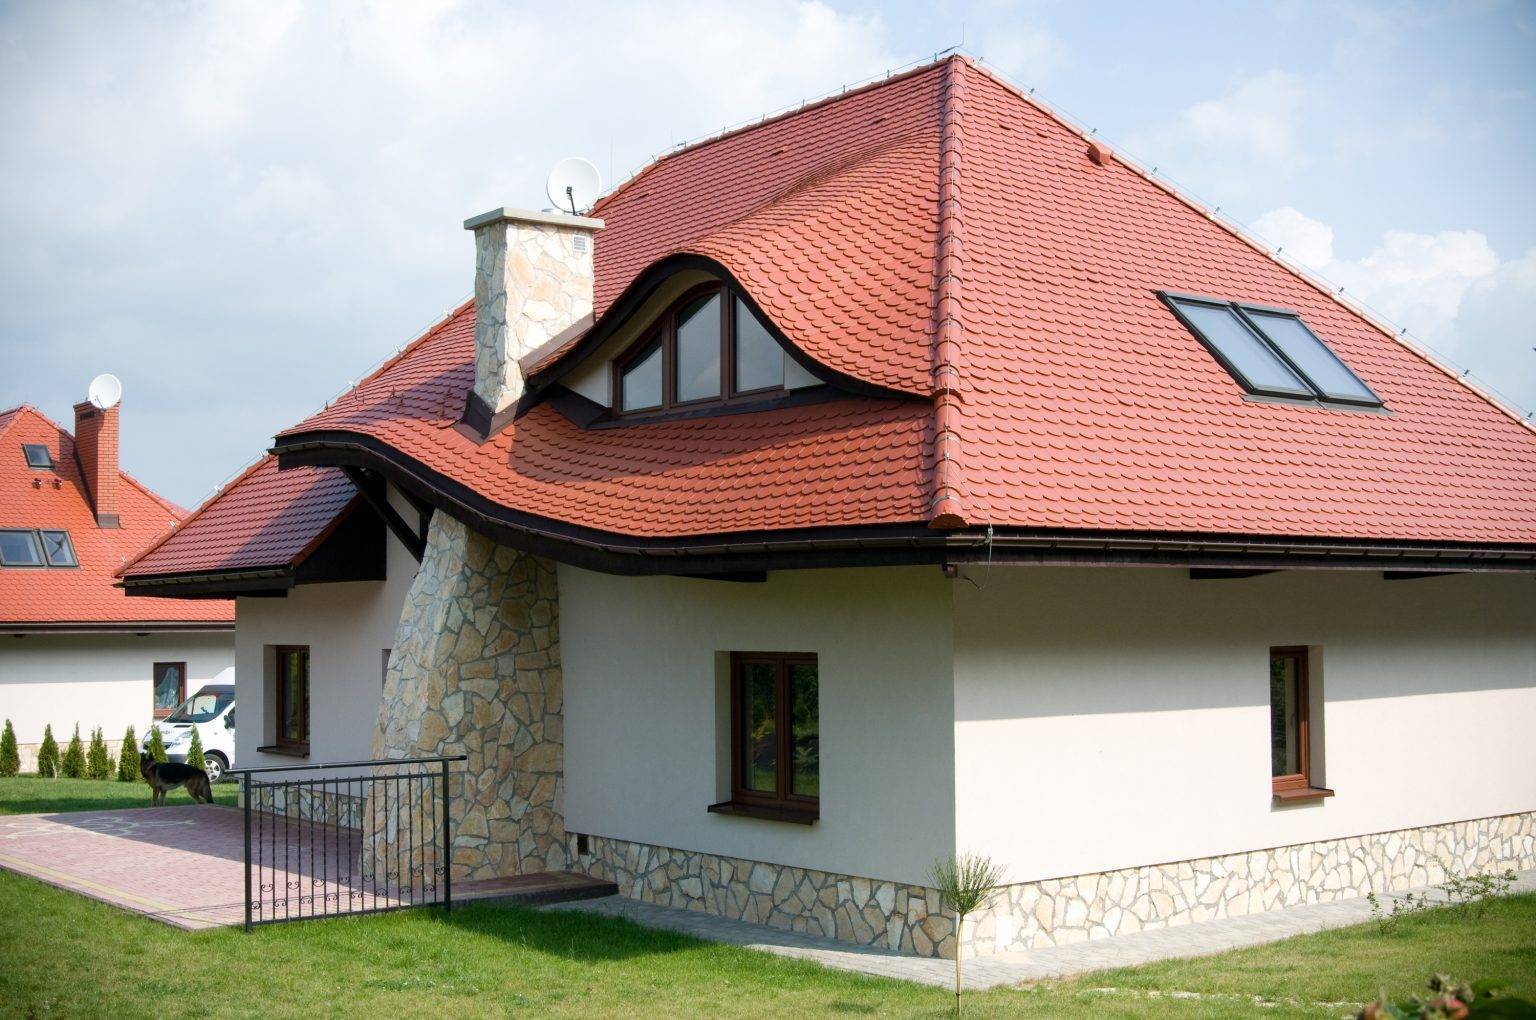 Чем покрыть дом снаружи и выбор покрытия крыши дома: сайдингом, пенополиуретаном, металлочерепицой - Обзор